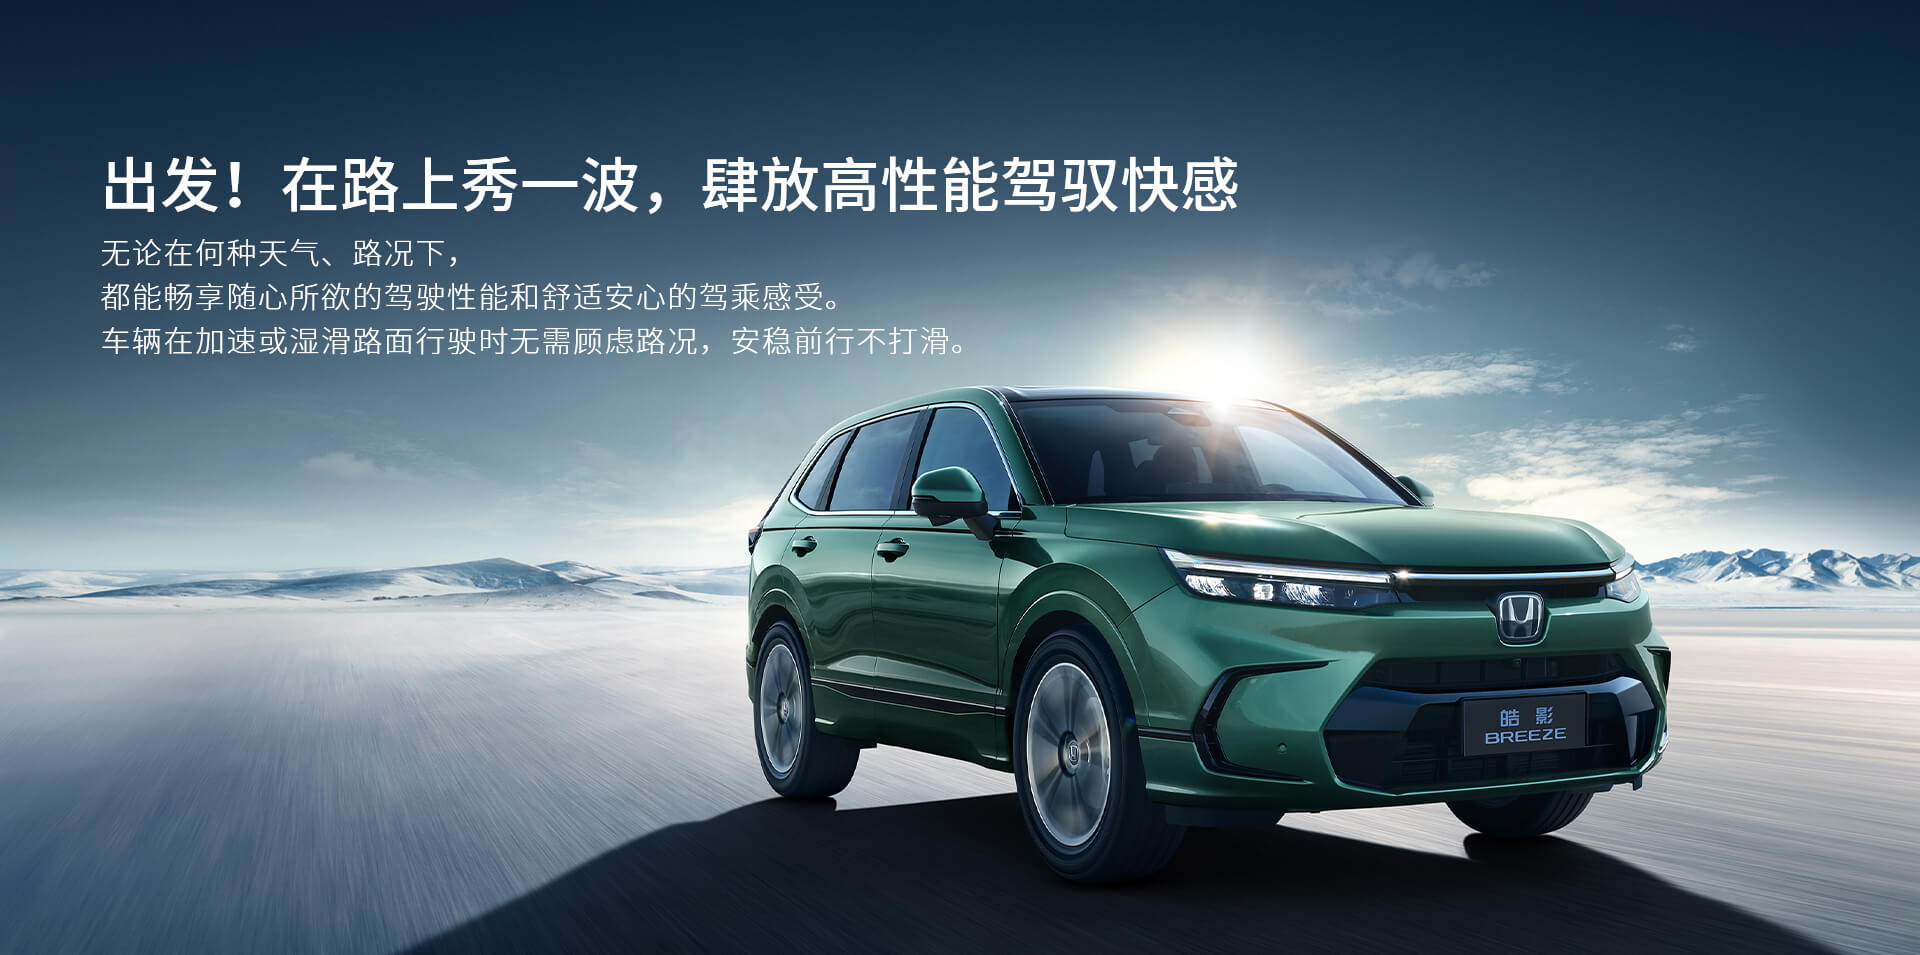 Honda Breeze - CR-V Trung Quốc được nhá hàng thế hệ mới - Ảnh 7.